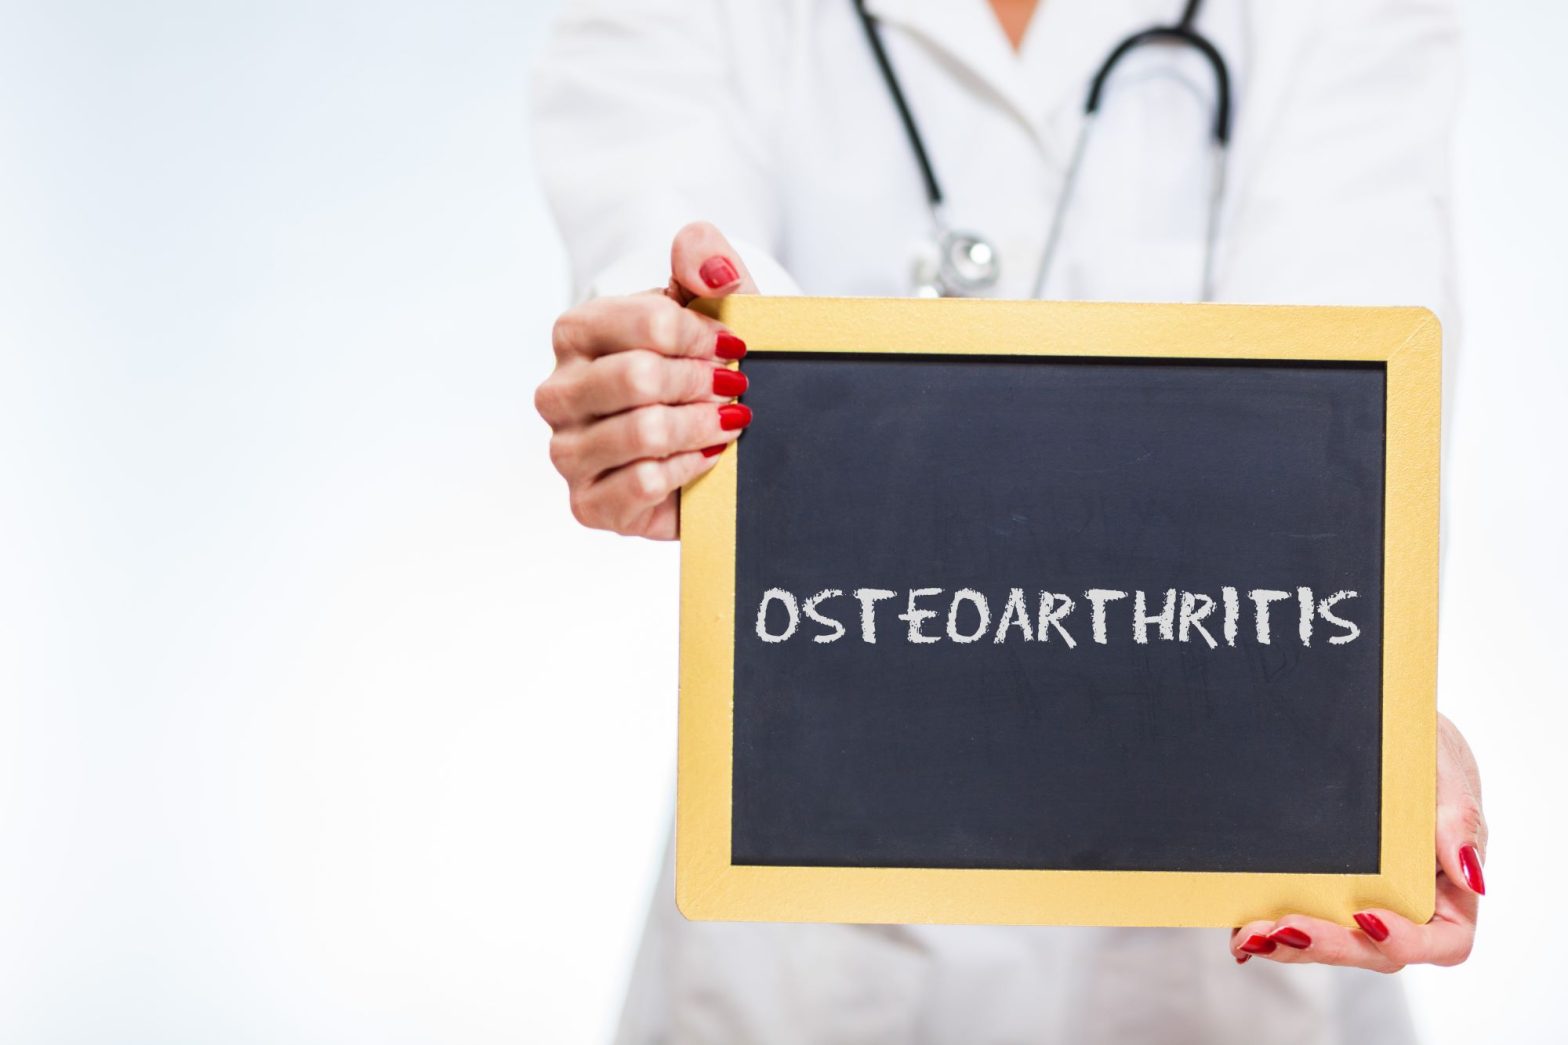 Osteoarthritis sign